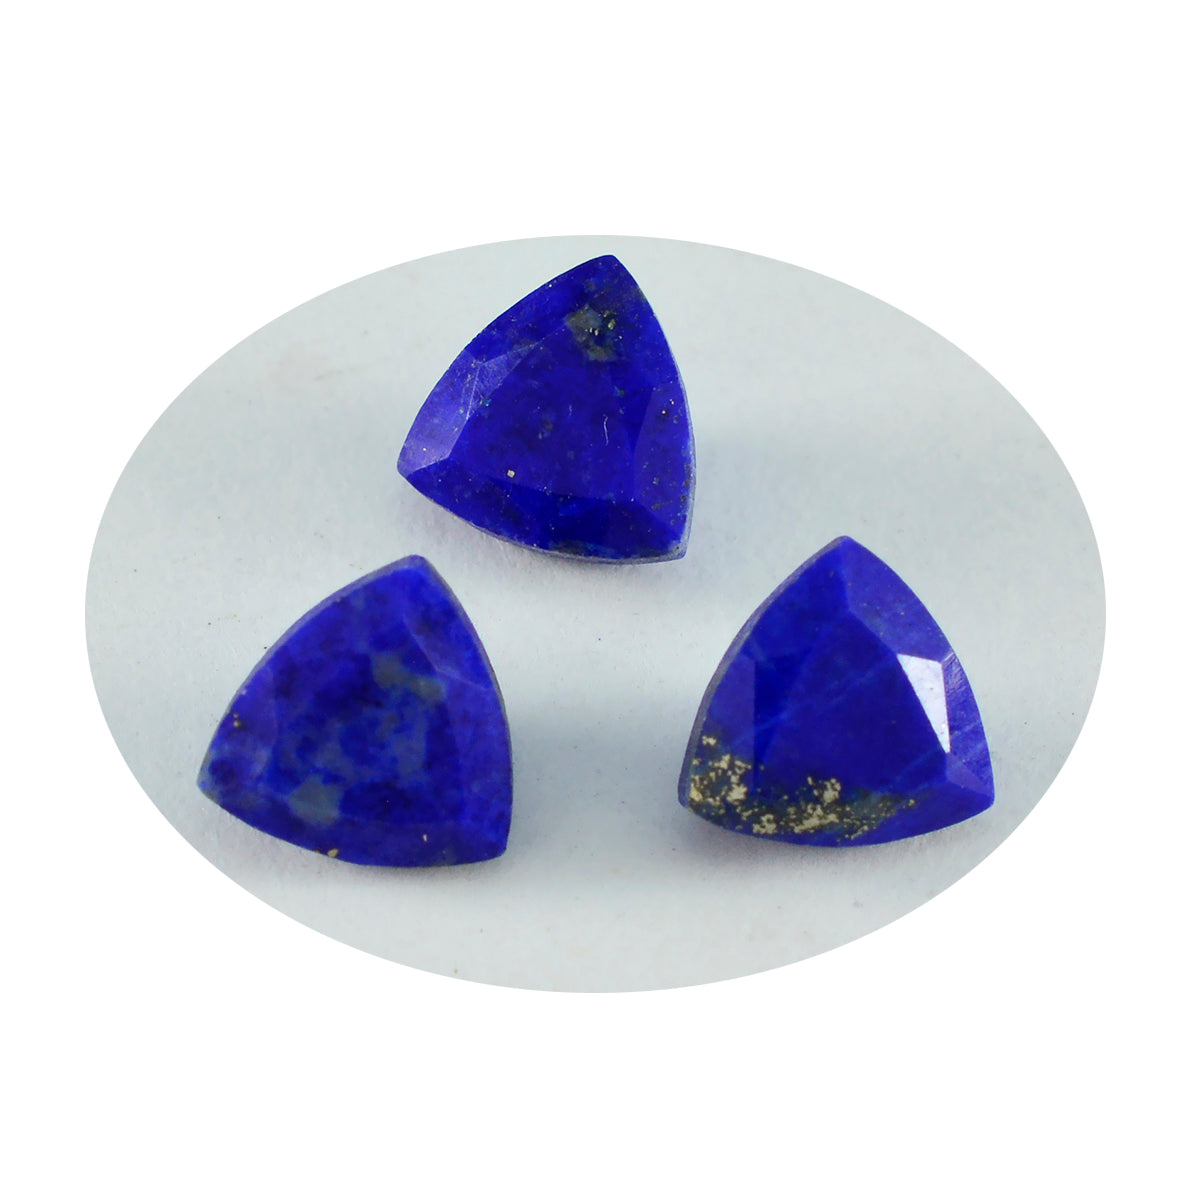 Riyogems, 1 pieza, lapislázuli azul real facetado, 12x12mm, forma de billón, piedra de calidad AAA